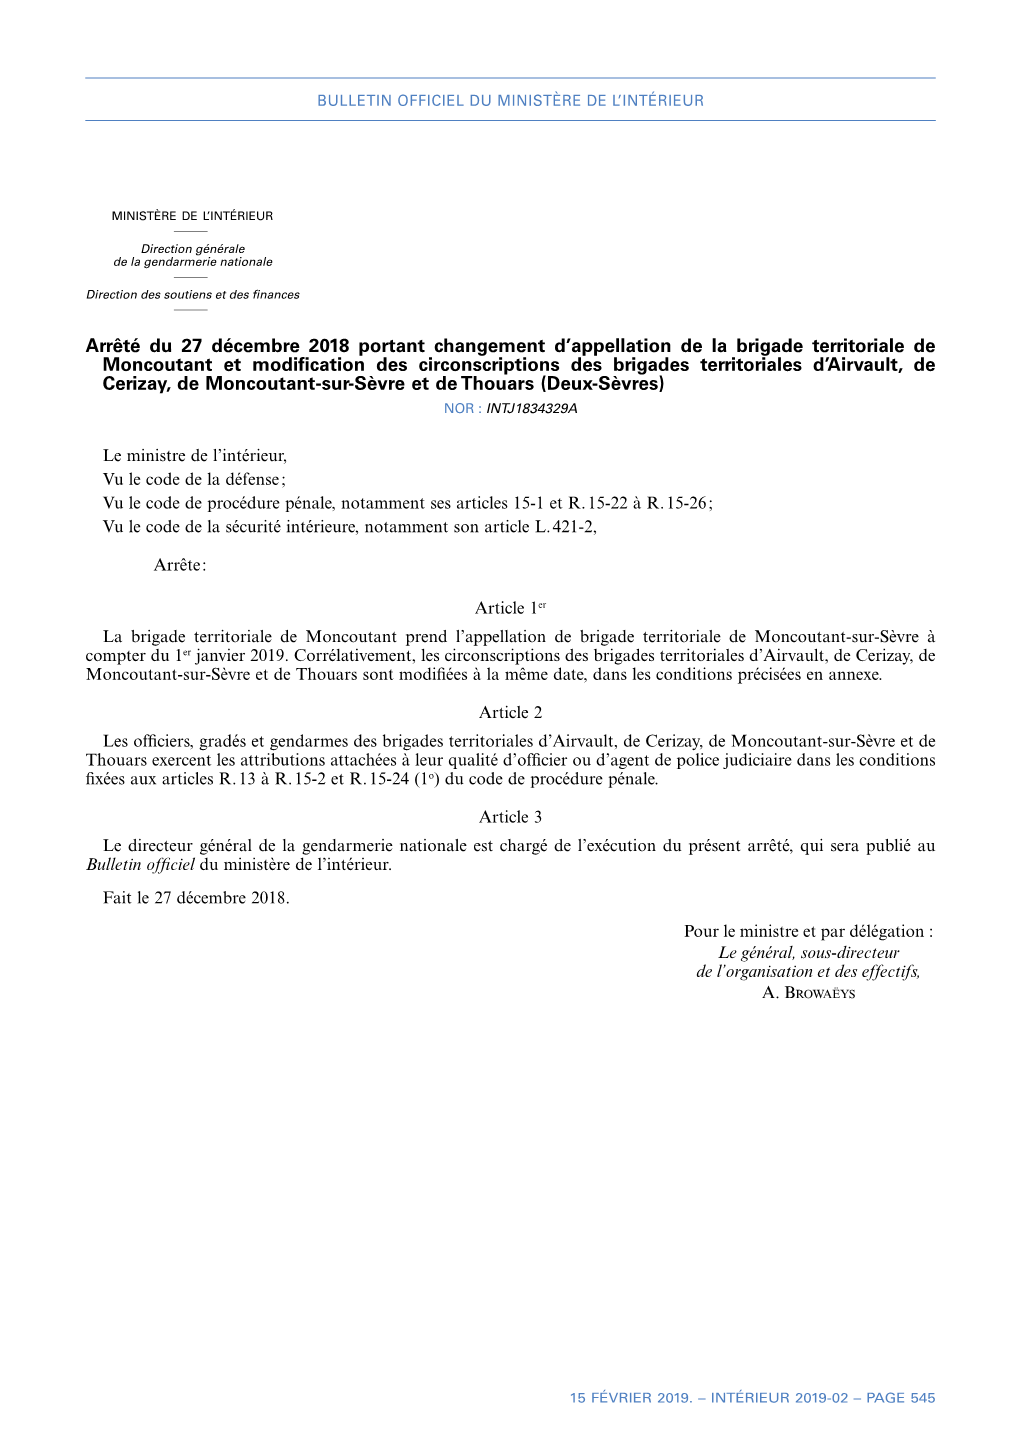 Arrêté Du 27 Décembre 2018 Portant Changement D'appellation De La Brigade Territoriale De Moncoutant Et Modification